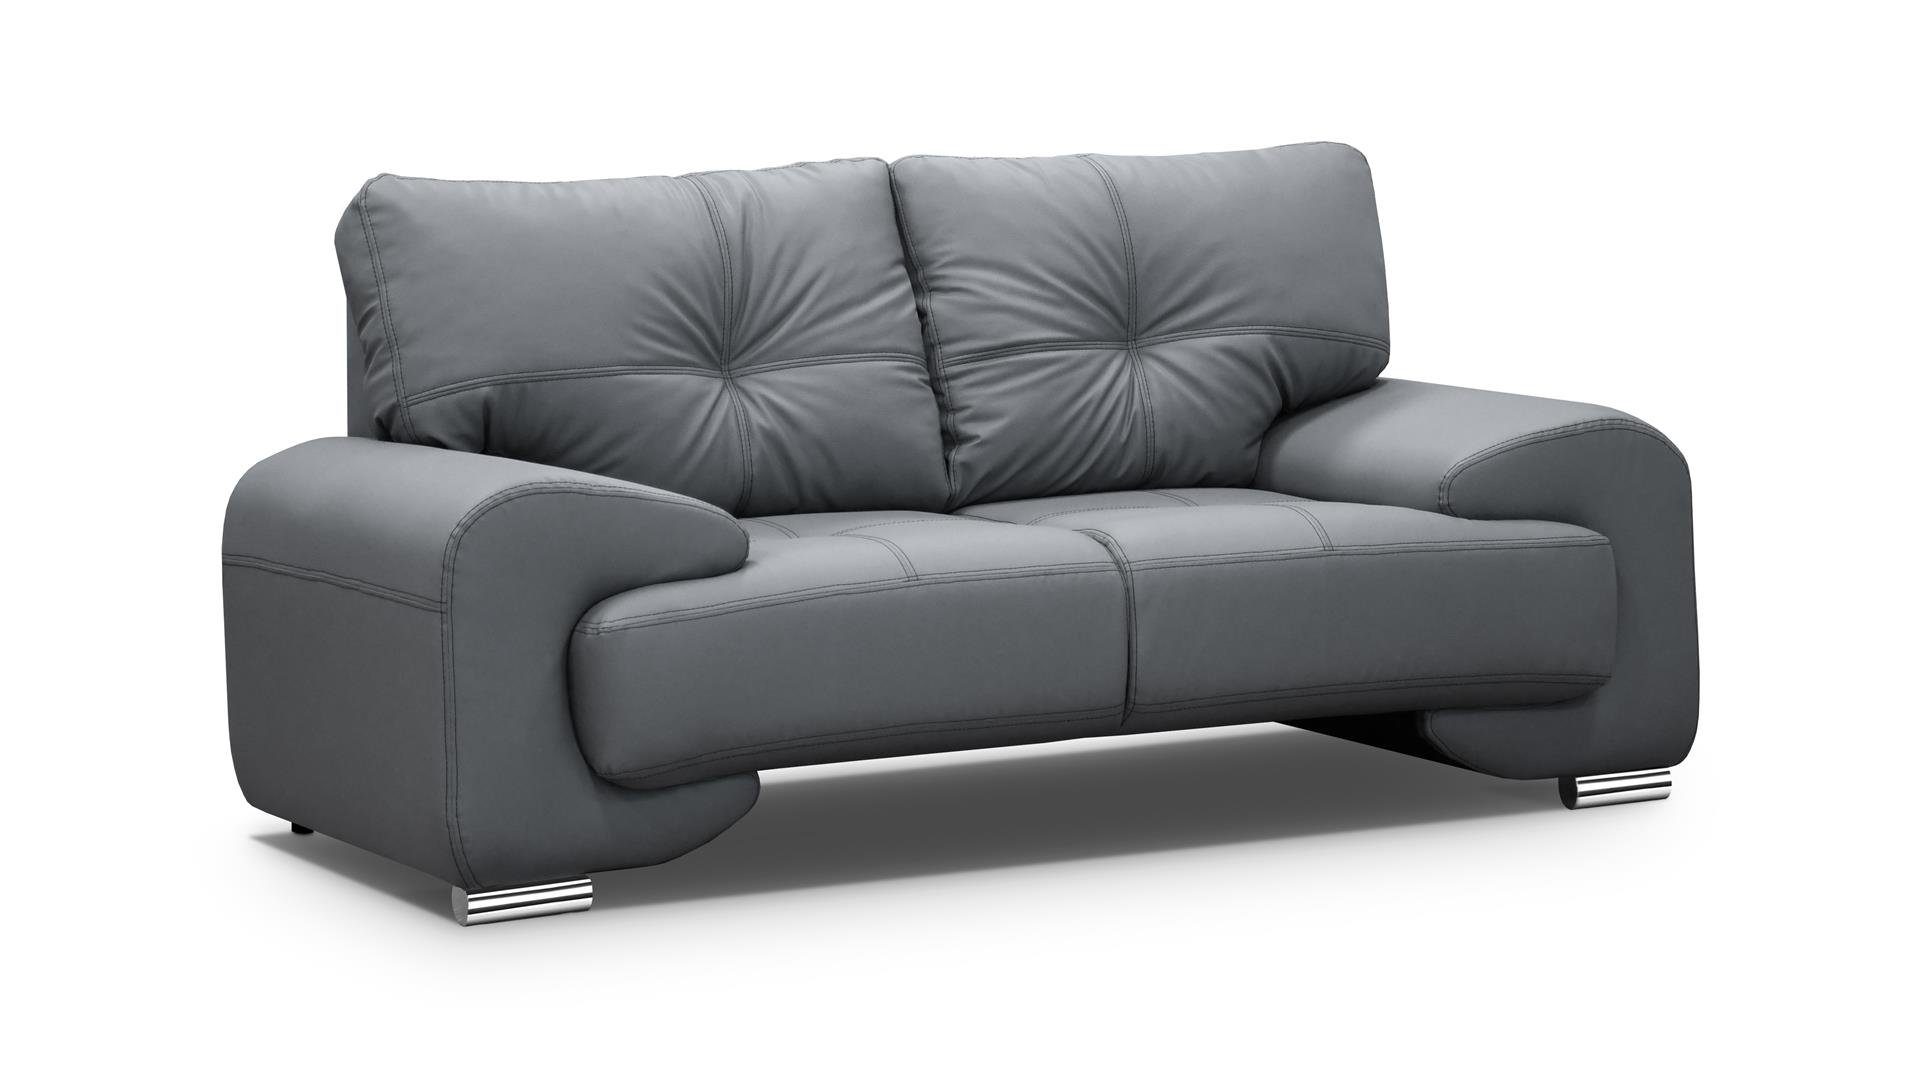 Beautysofa 2-Sitzer Zweisitzer Sofa Couch OMEGA Neu Grau (dolaro 04)